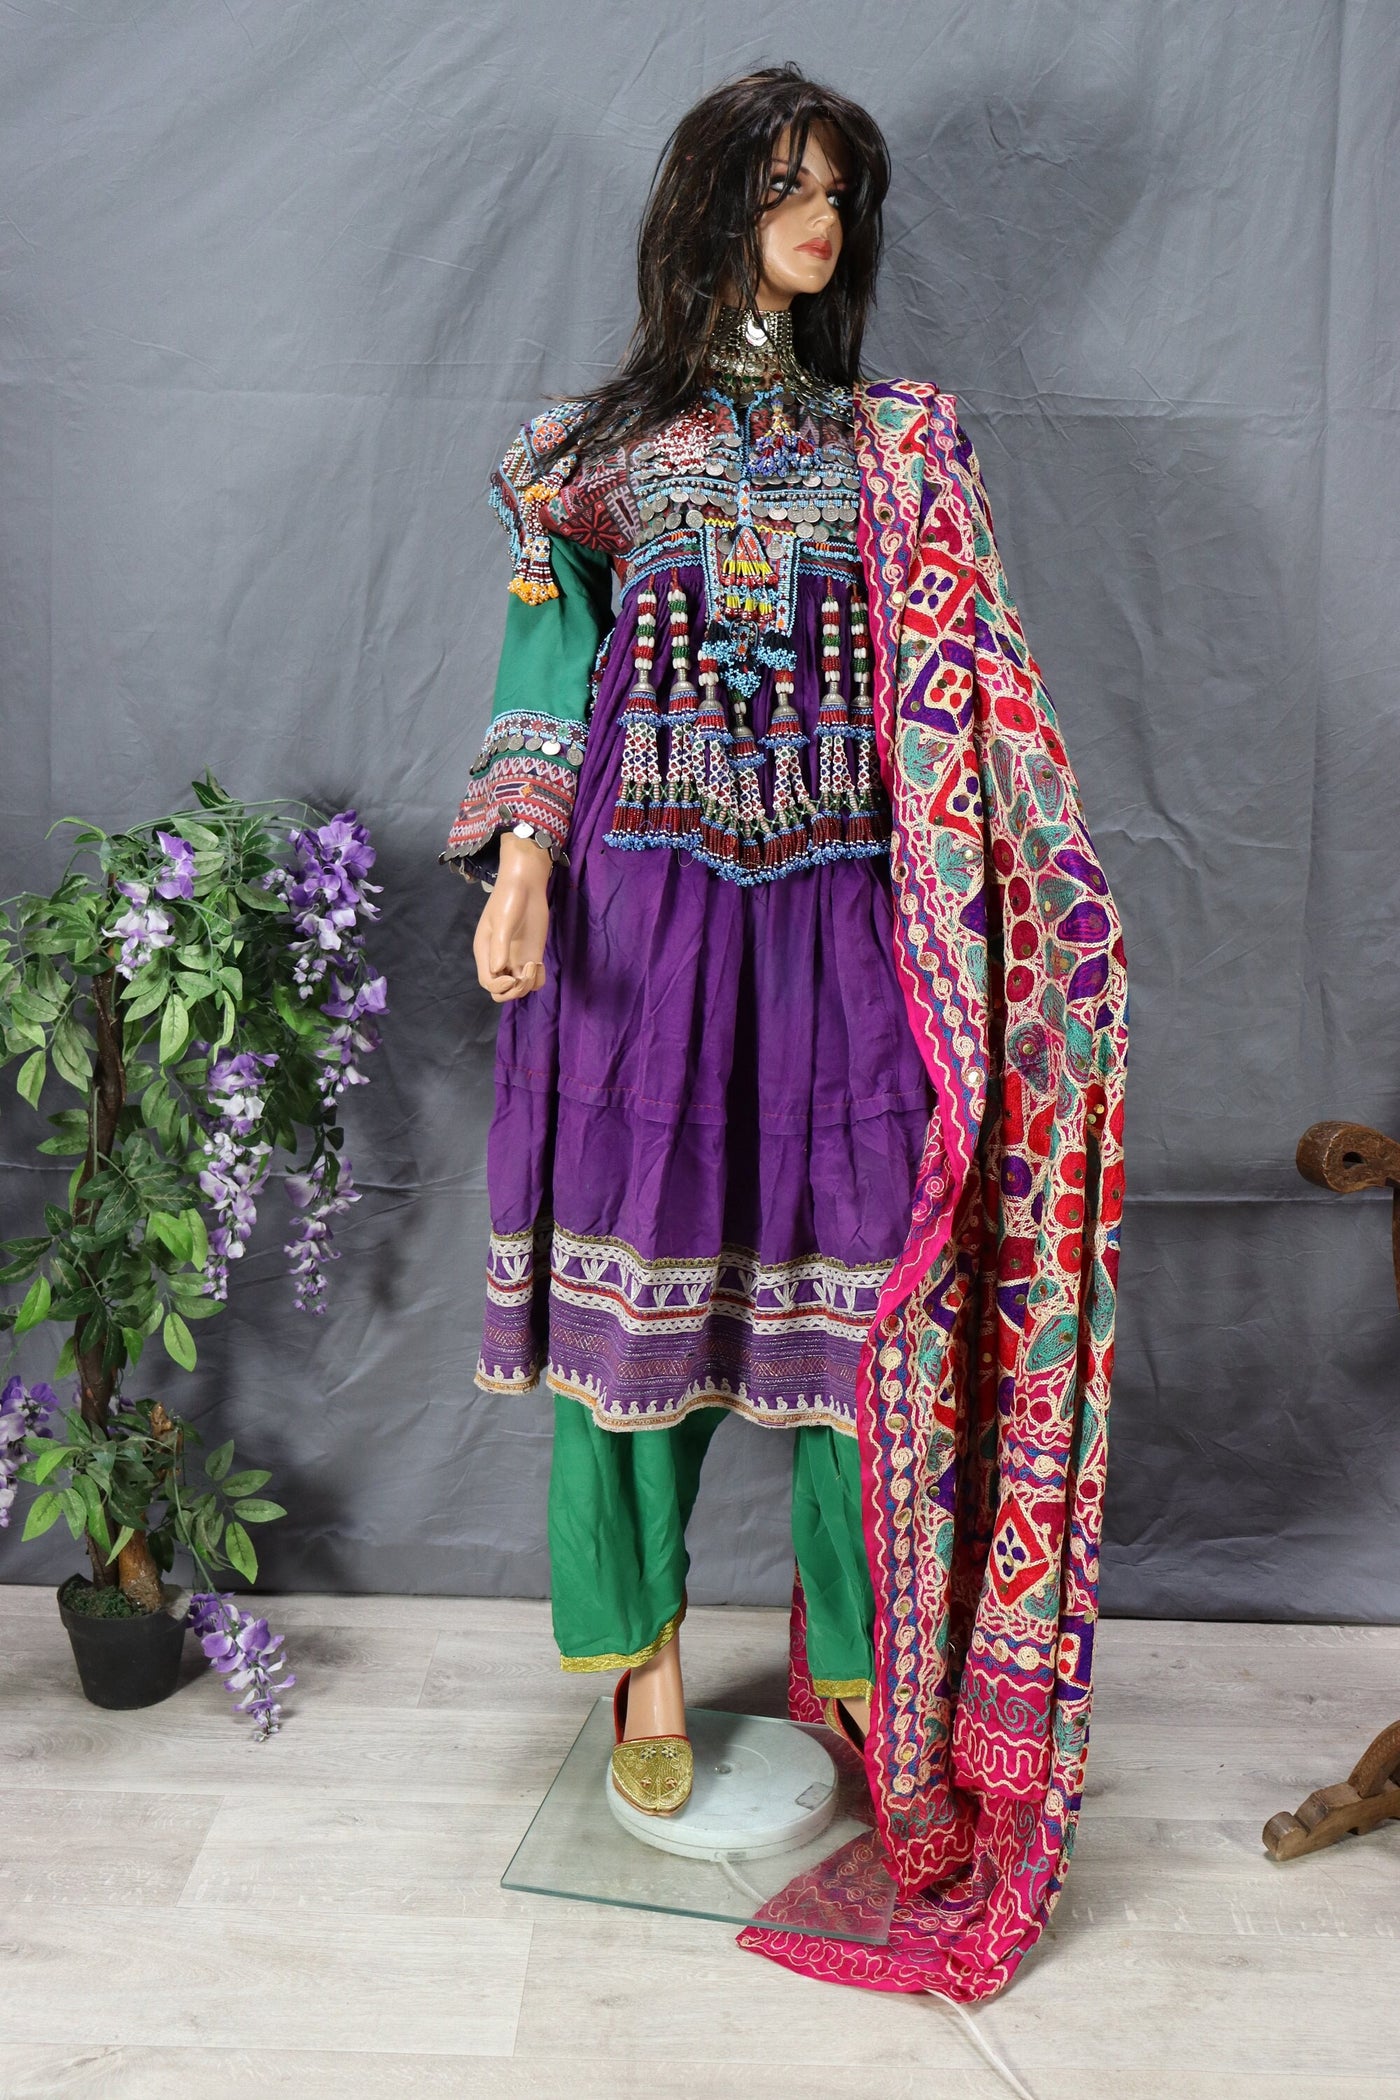 3 teilig antik Orient Nomaden kuchi frauen Tracht afghan kleid afghanistan hand bestickte kostüm Nr-D  Orientsbazar   